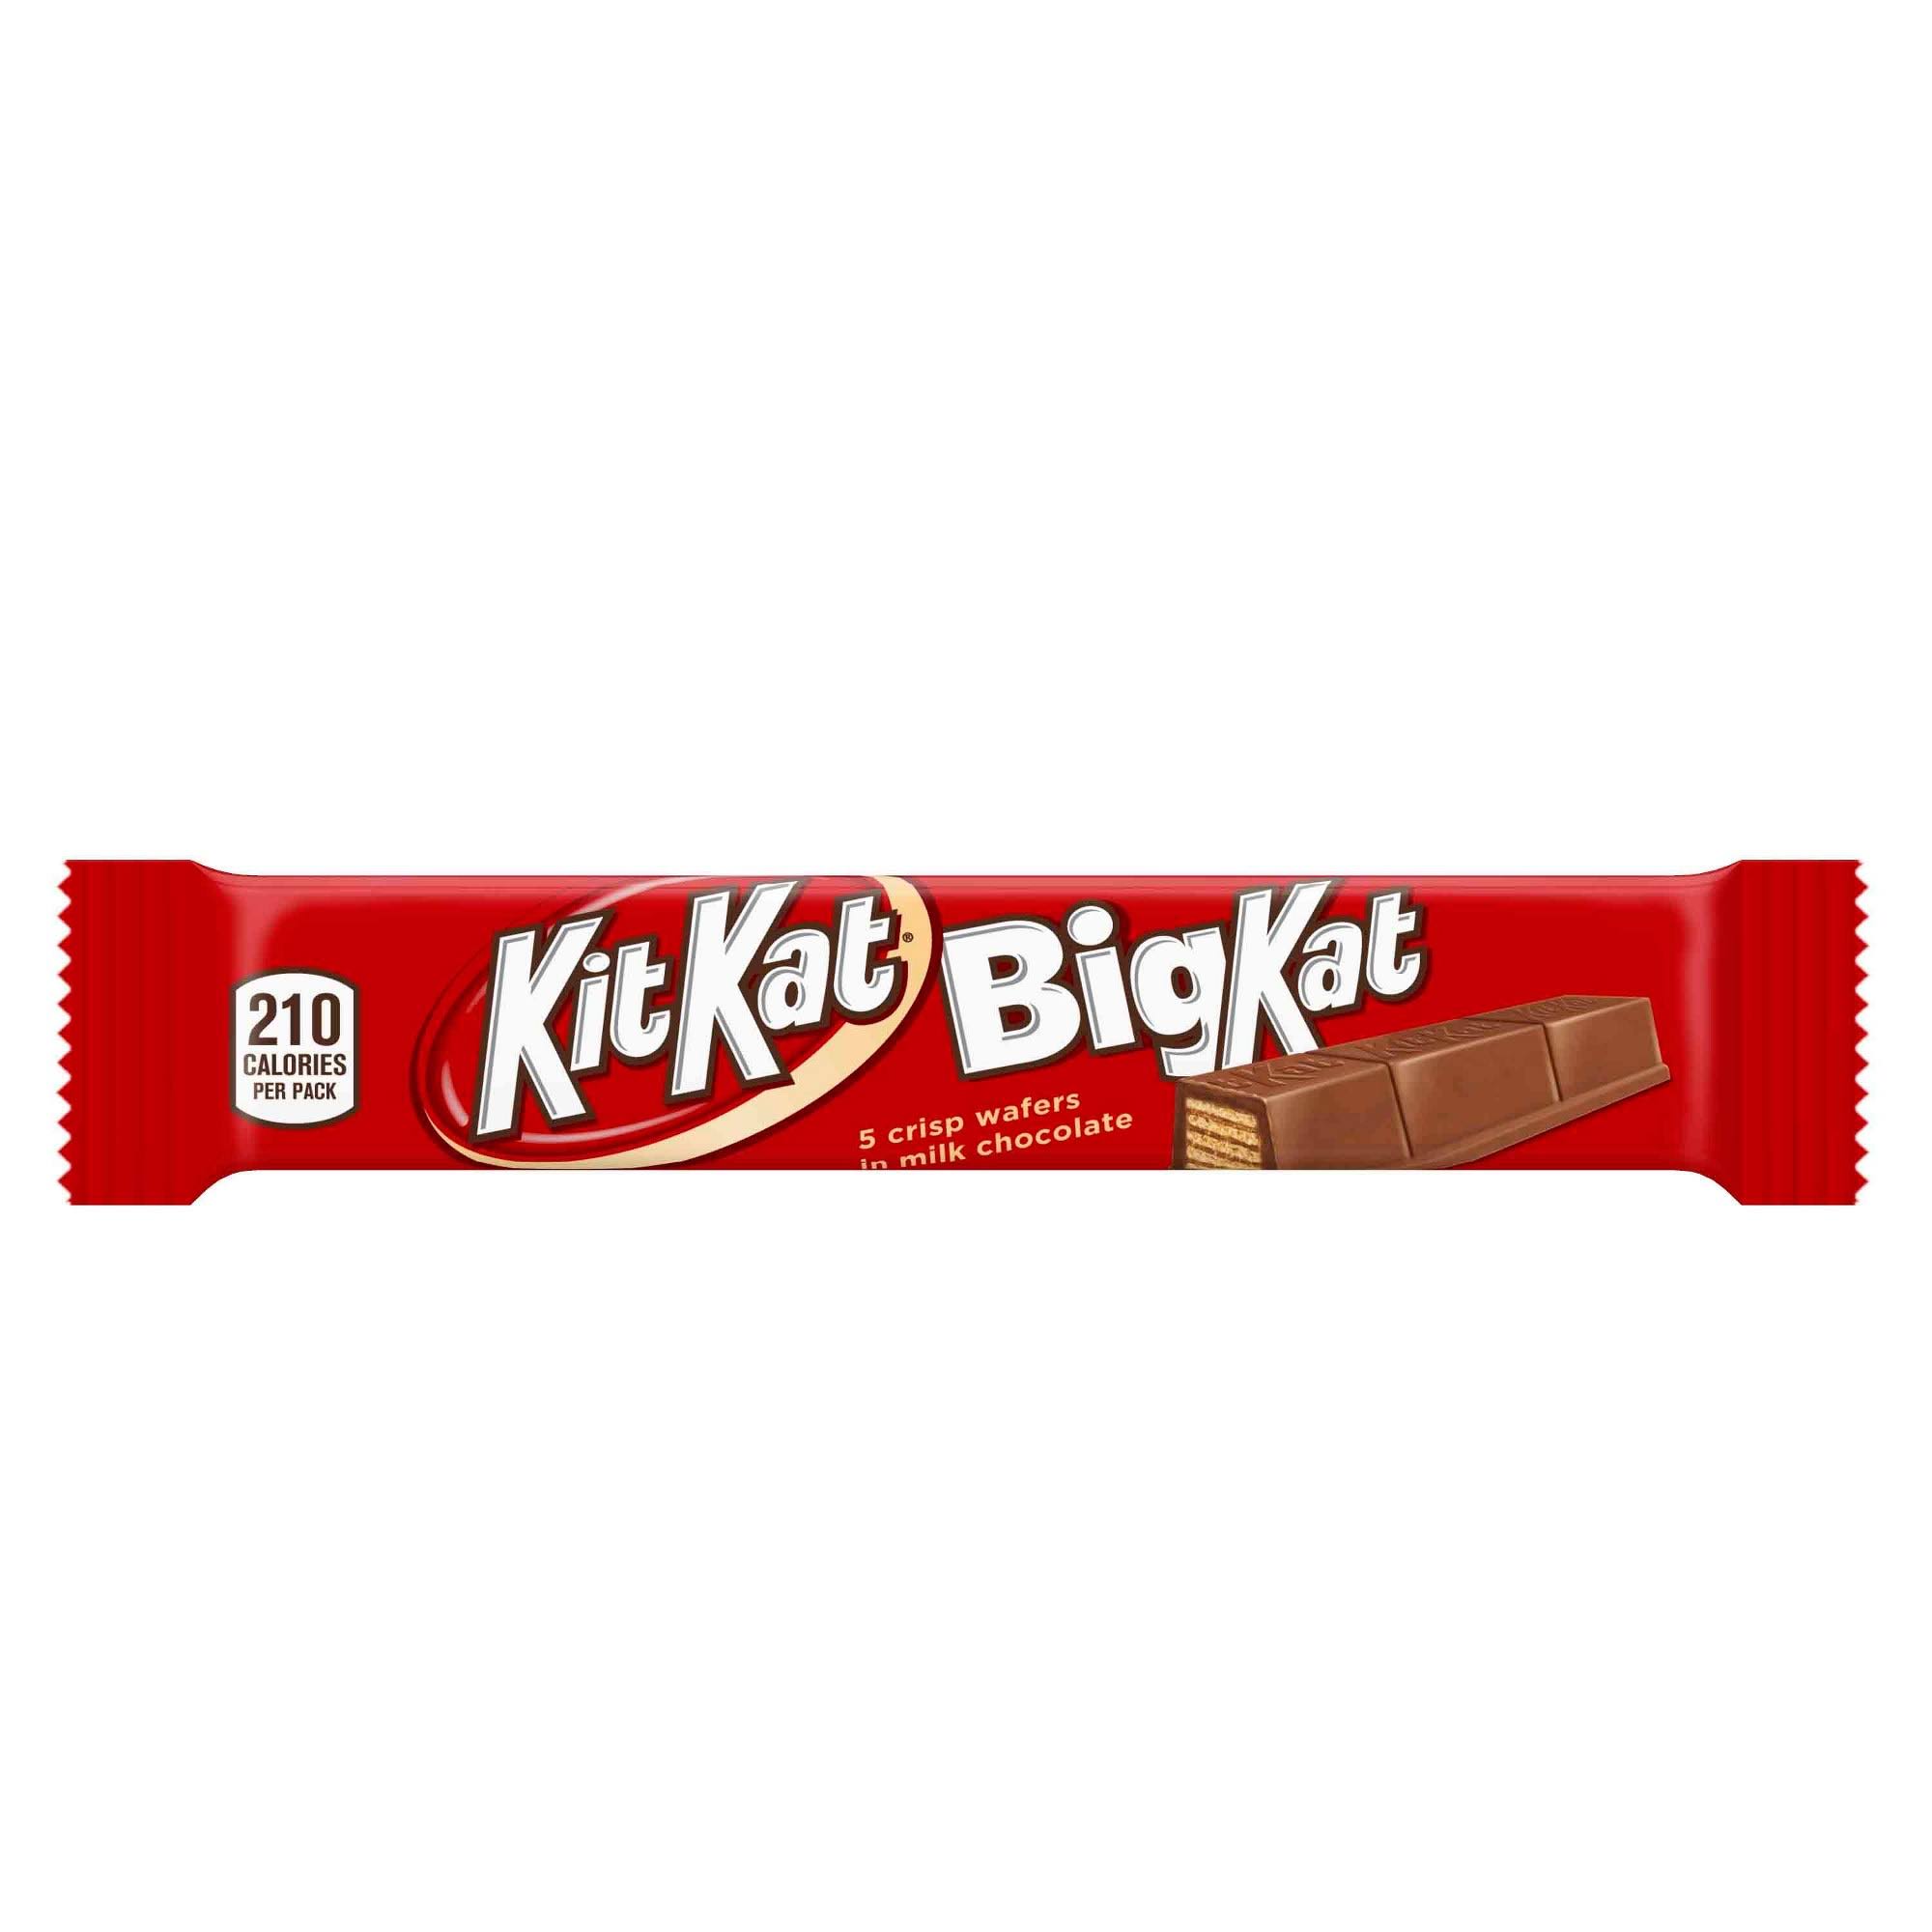 Kit Kat Big Kat Chocolate Bar - 1.5oz